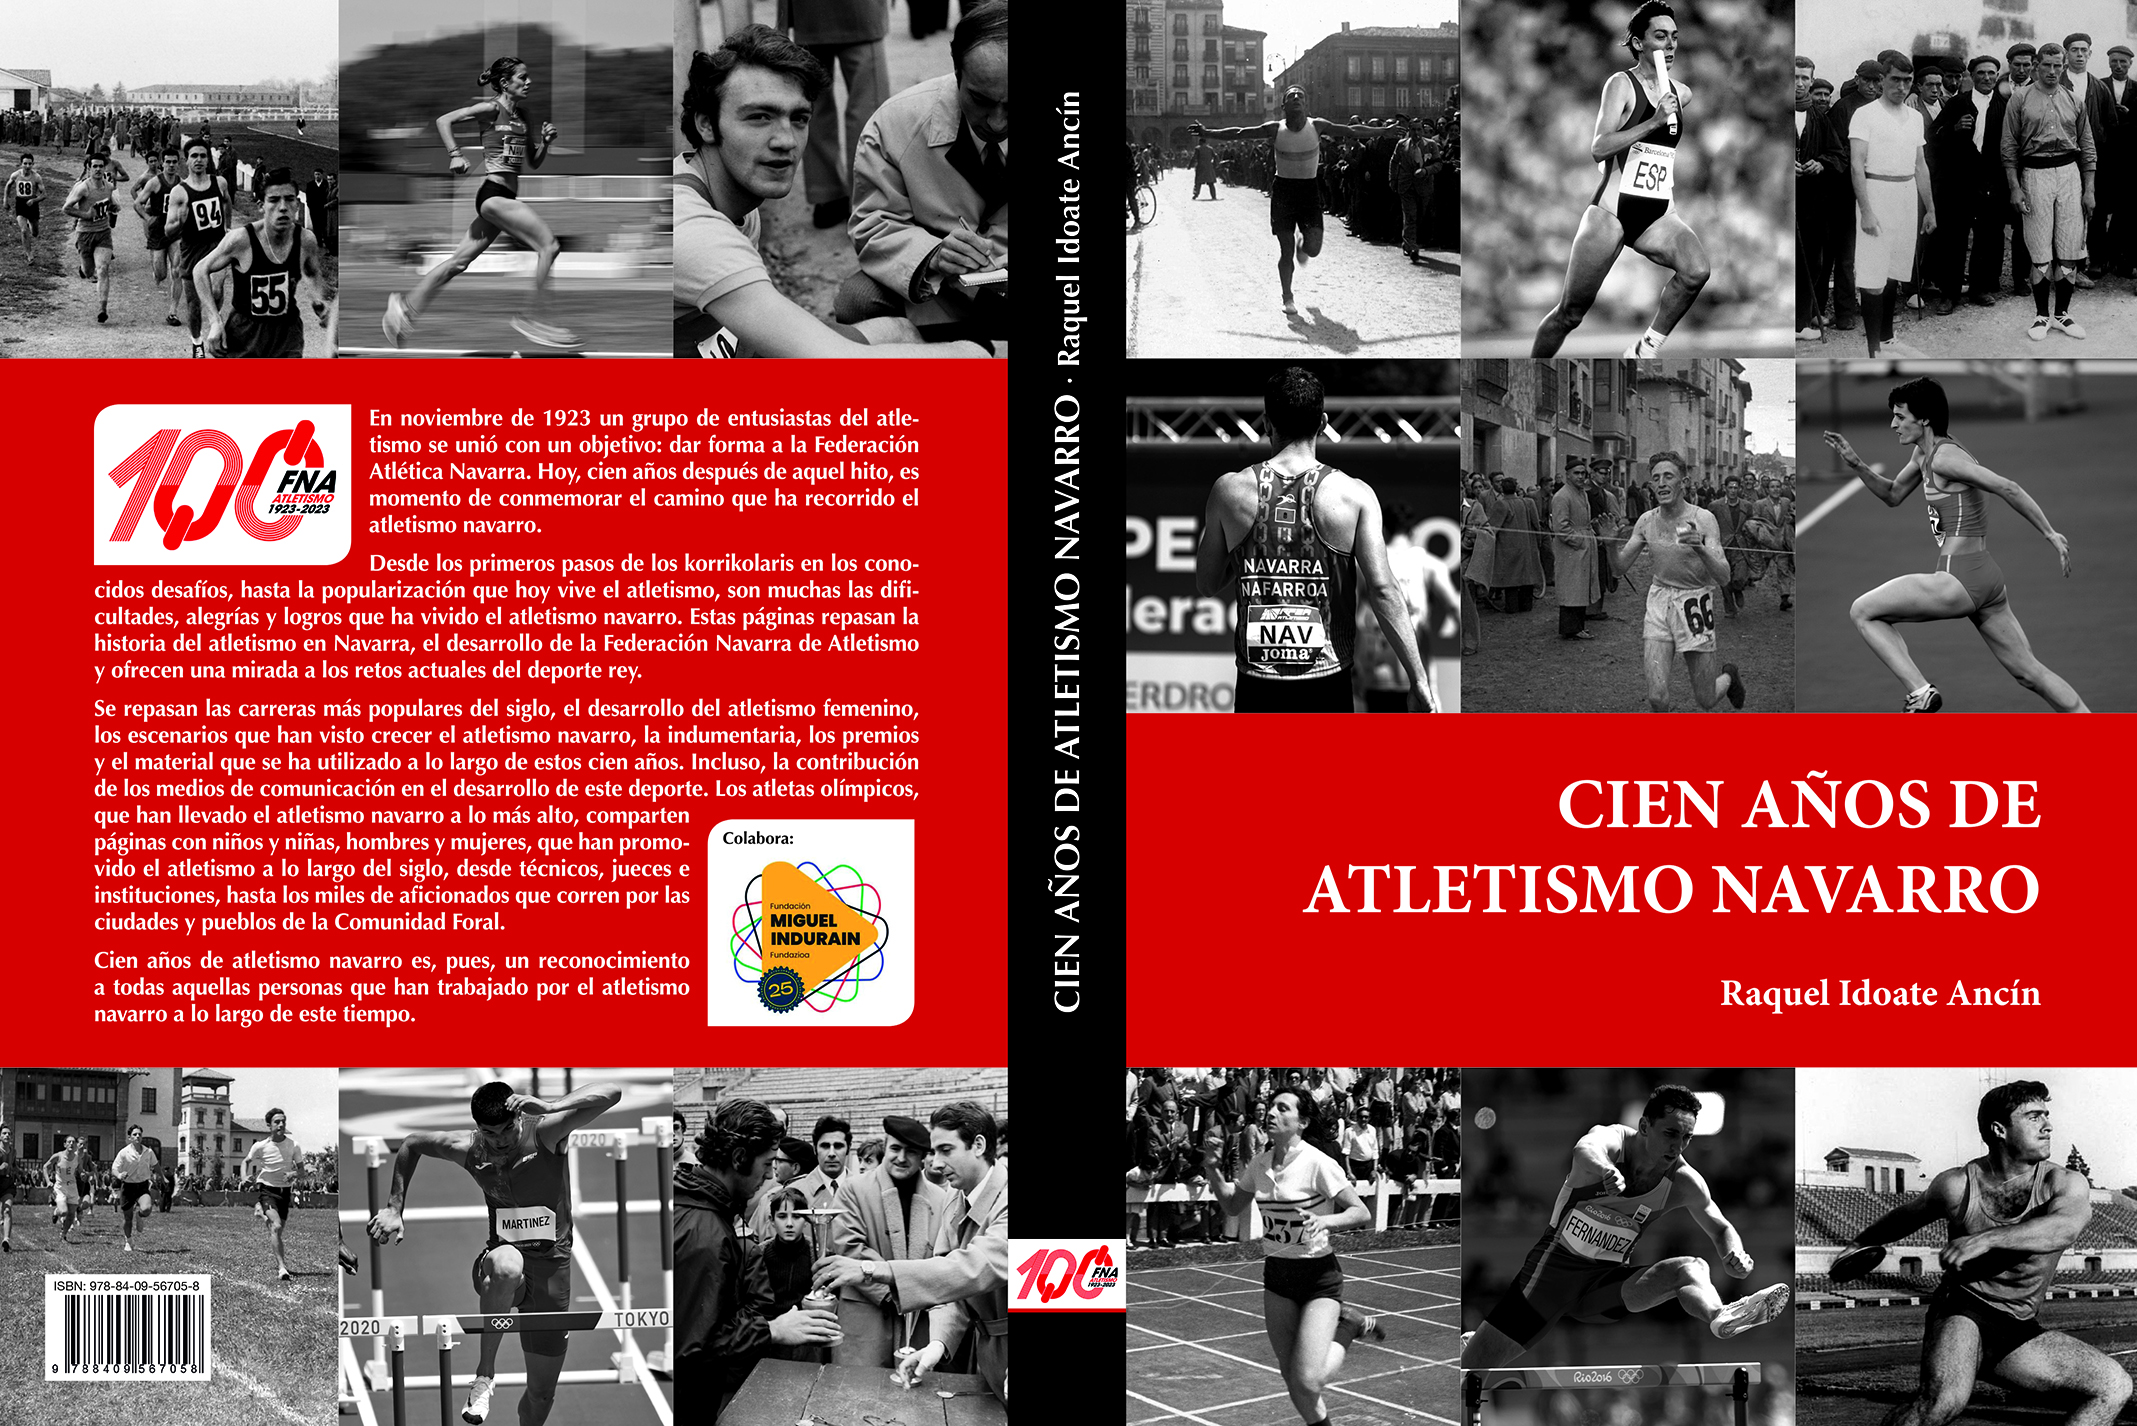  Libro Centenario de la Federación 100 años de Atletismo